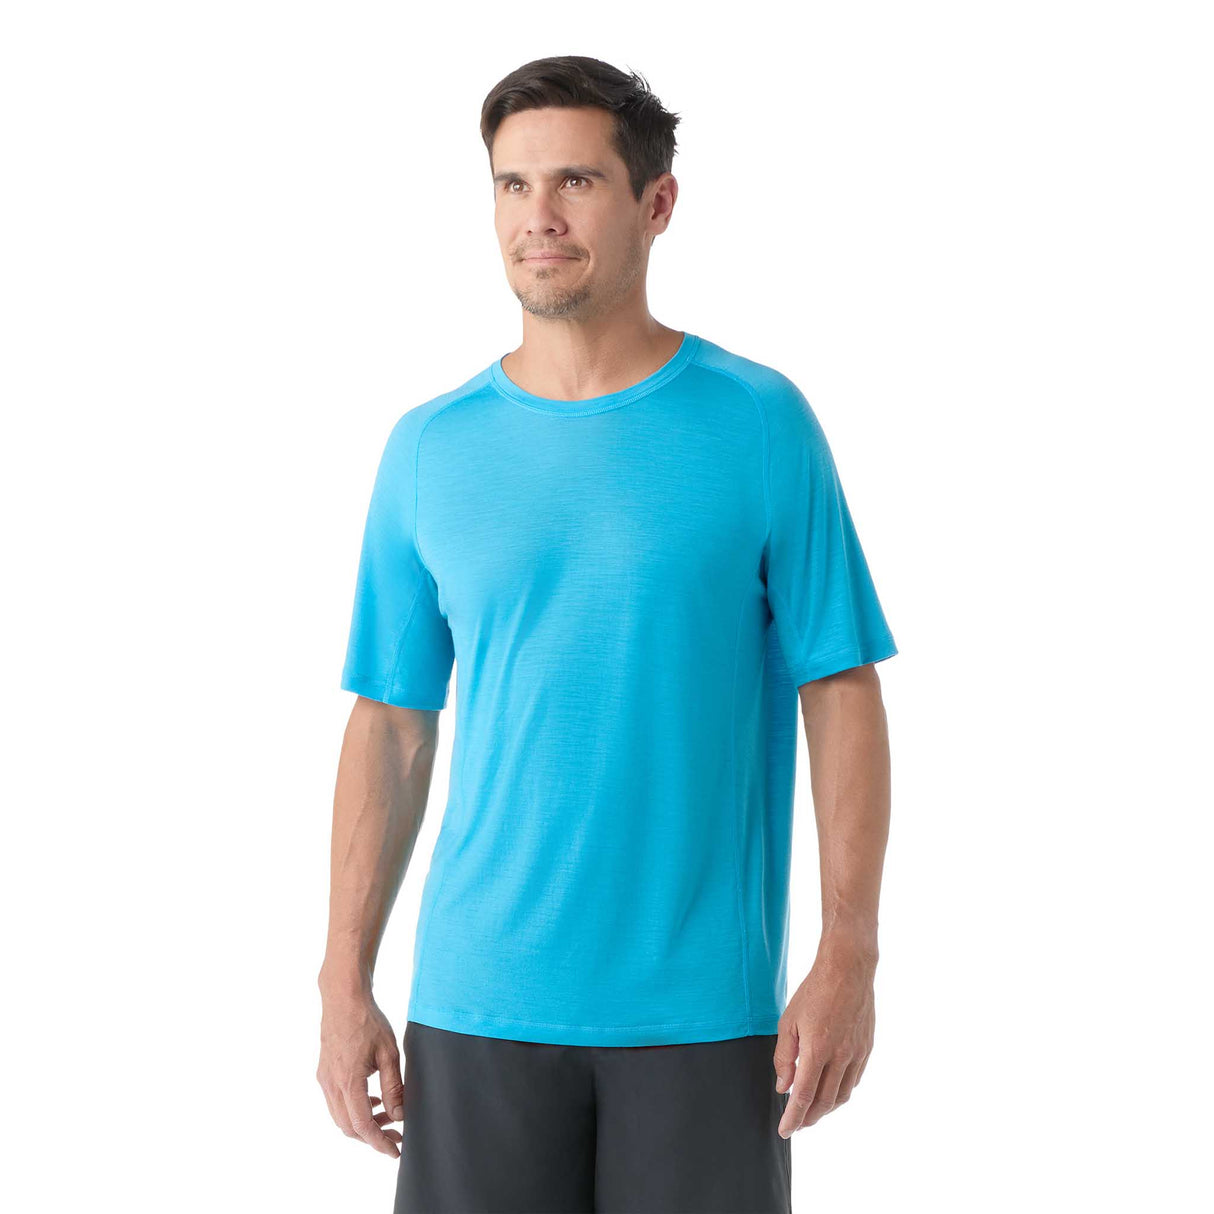 Smartwool Active Ultralite t-shirt à manches courtes homme face- bleu crépuscule